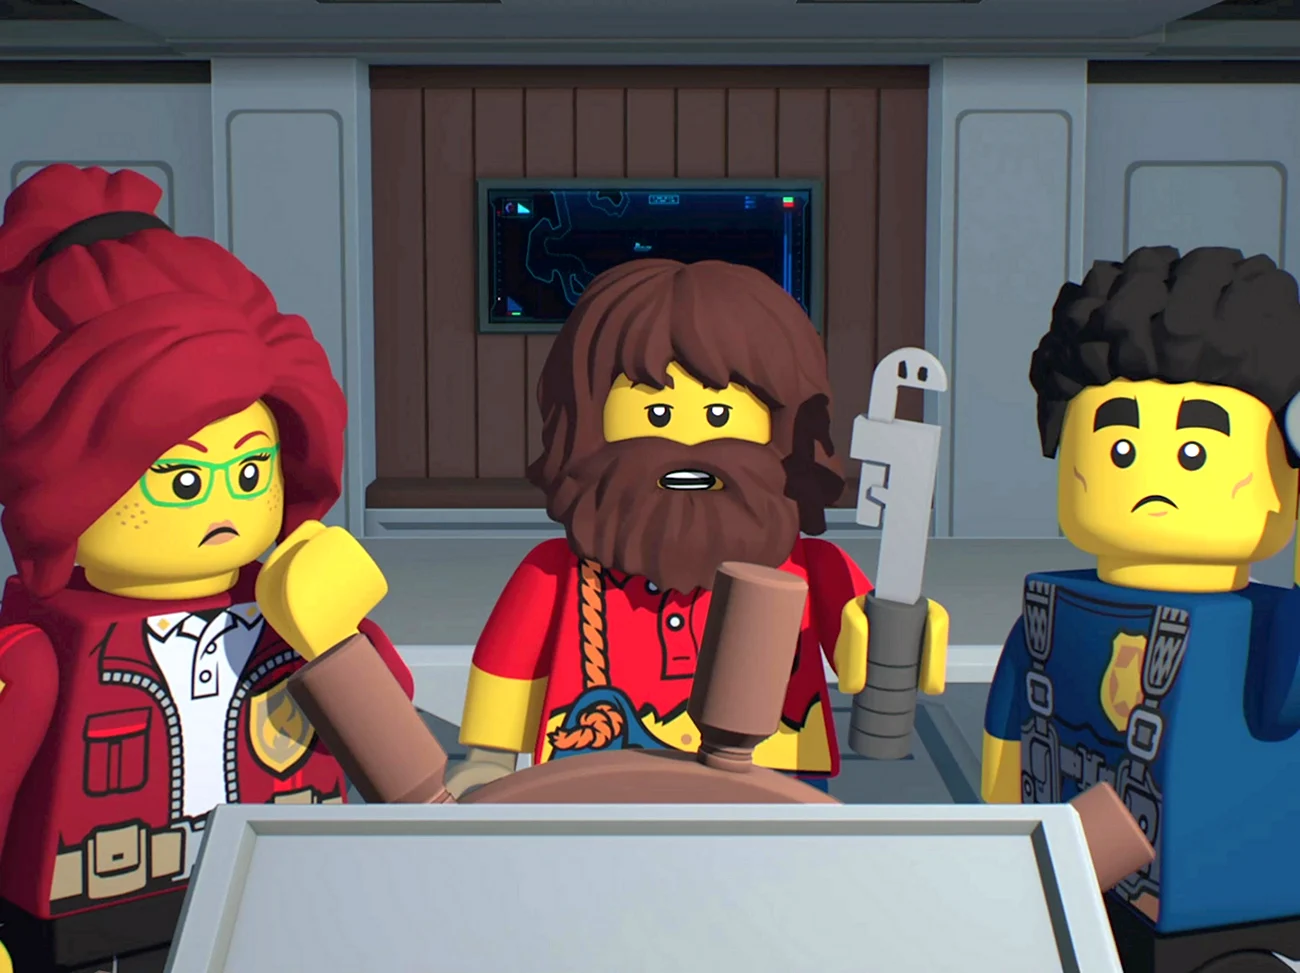 Лего Сити мультфильм смотреть онлайн бесплатно в хорошем качестве 2019. Картинка из мультфильма